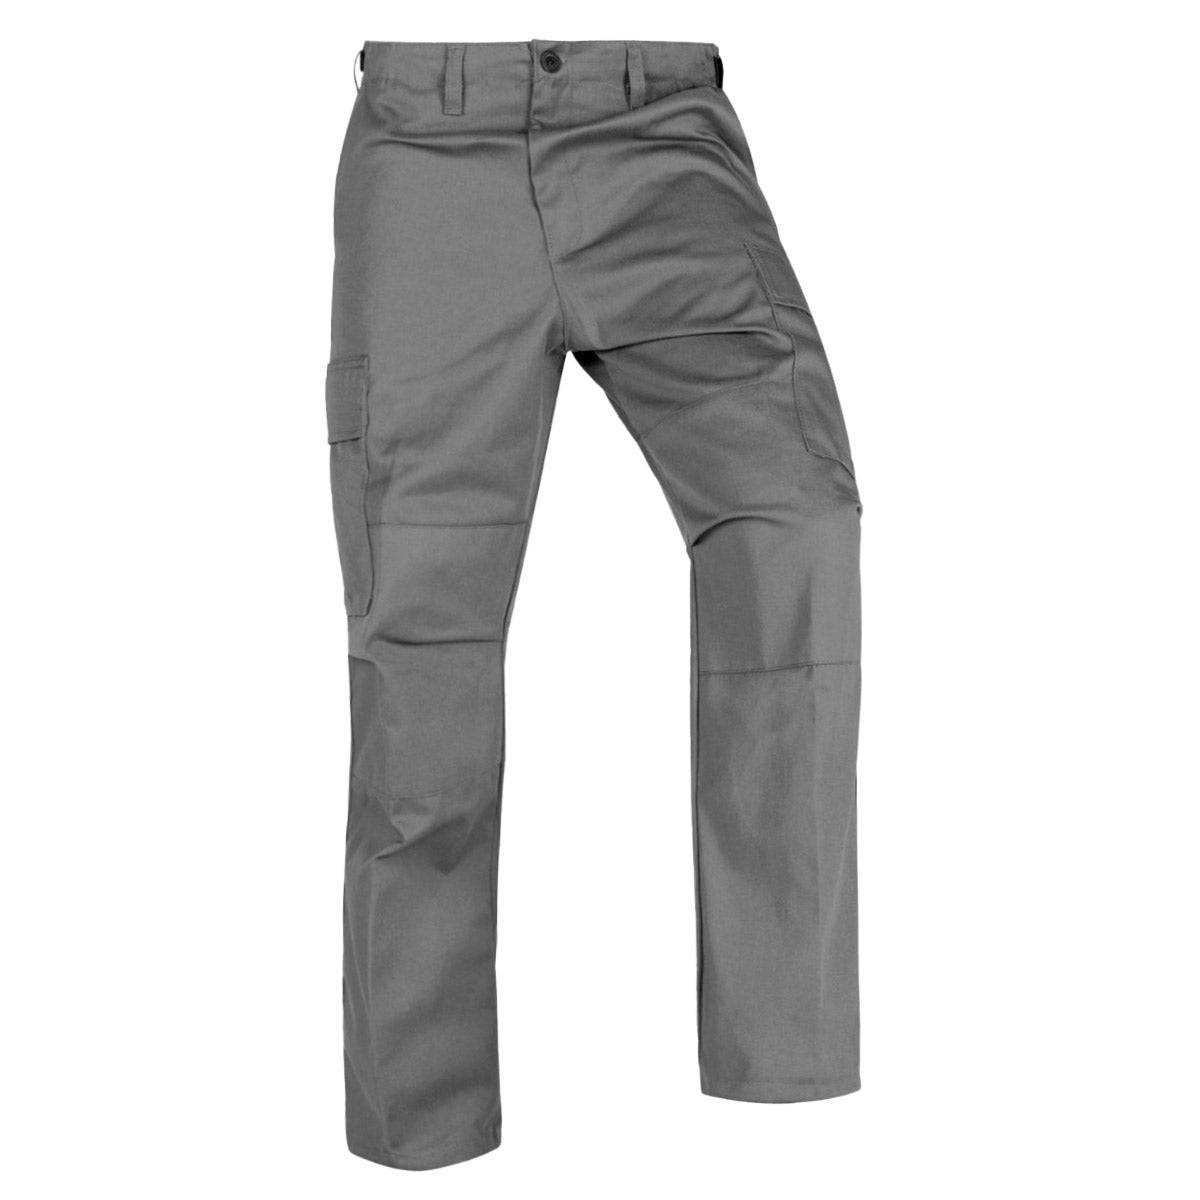 Pantalon Gabardina Verde Olivo Tactico – Army store industry